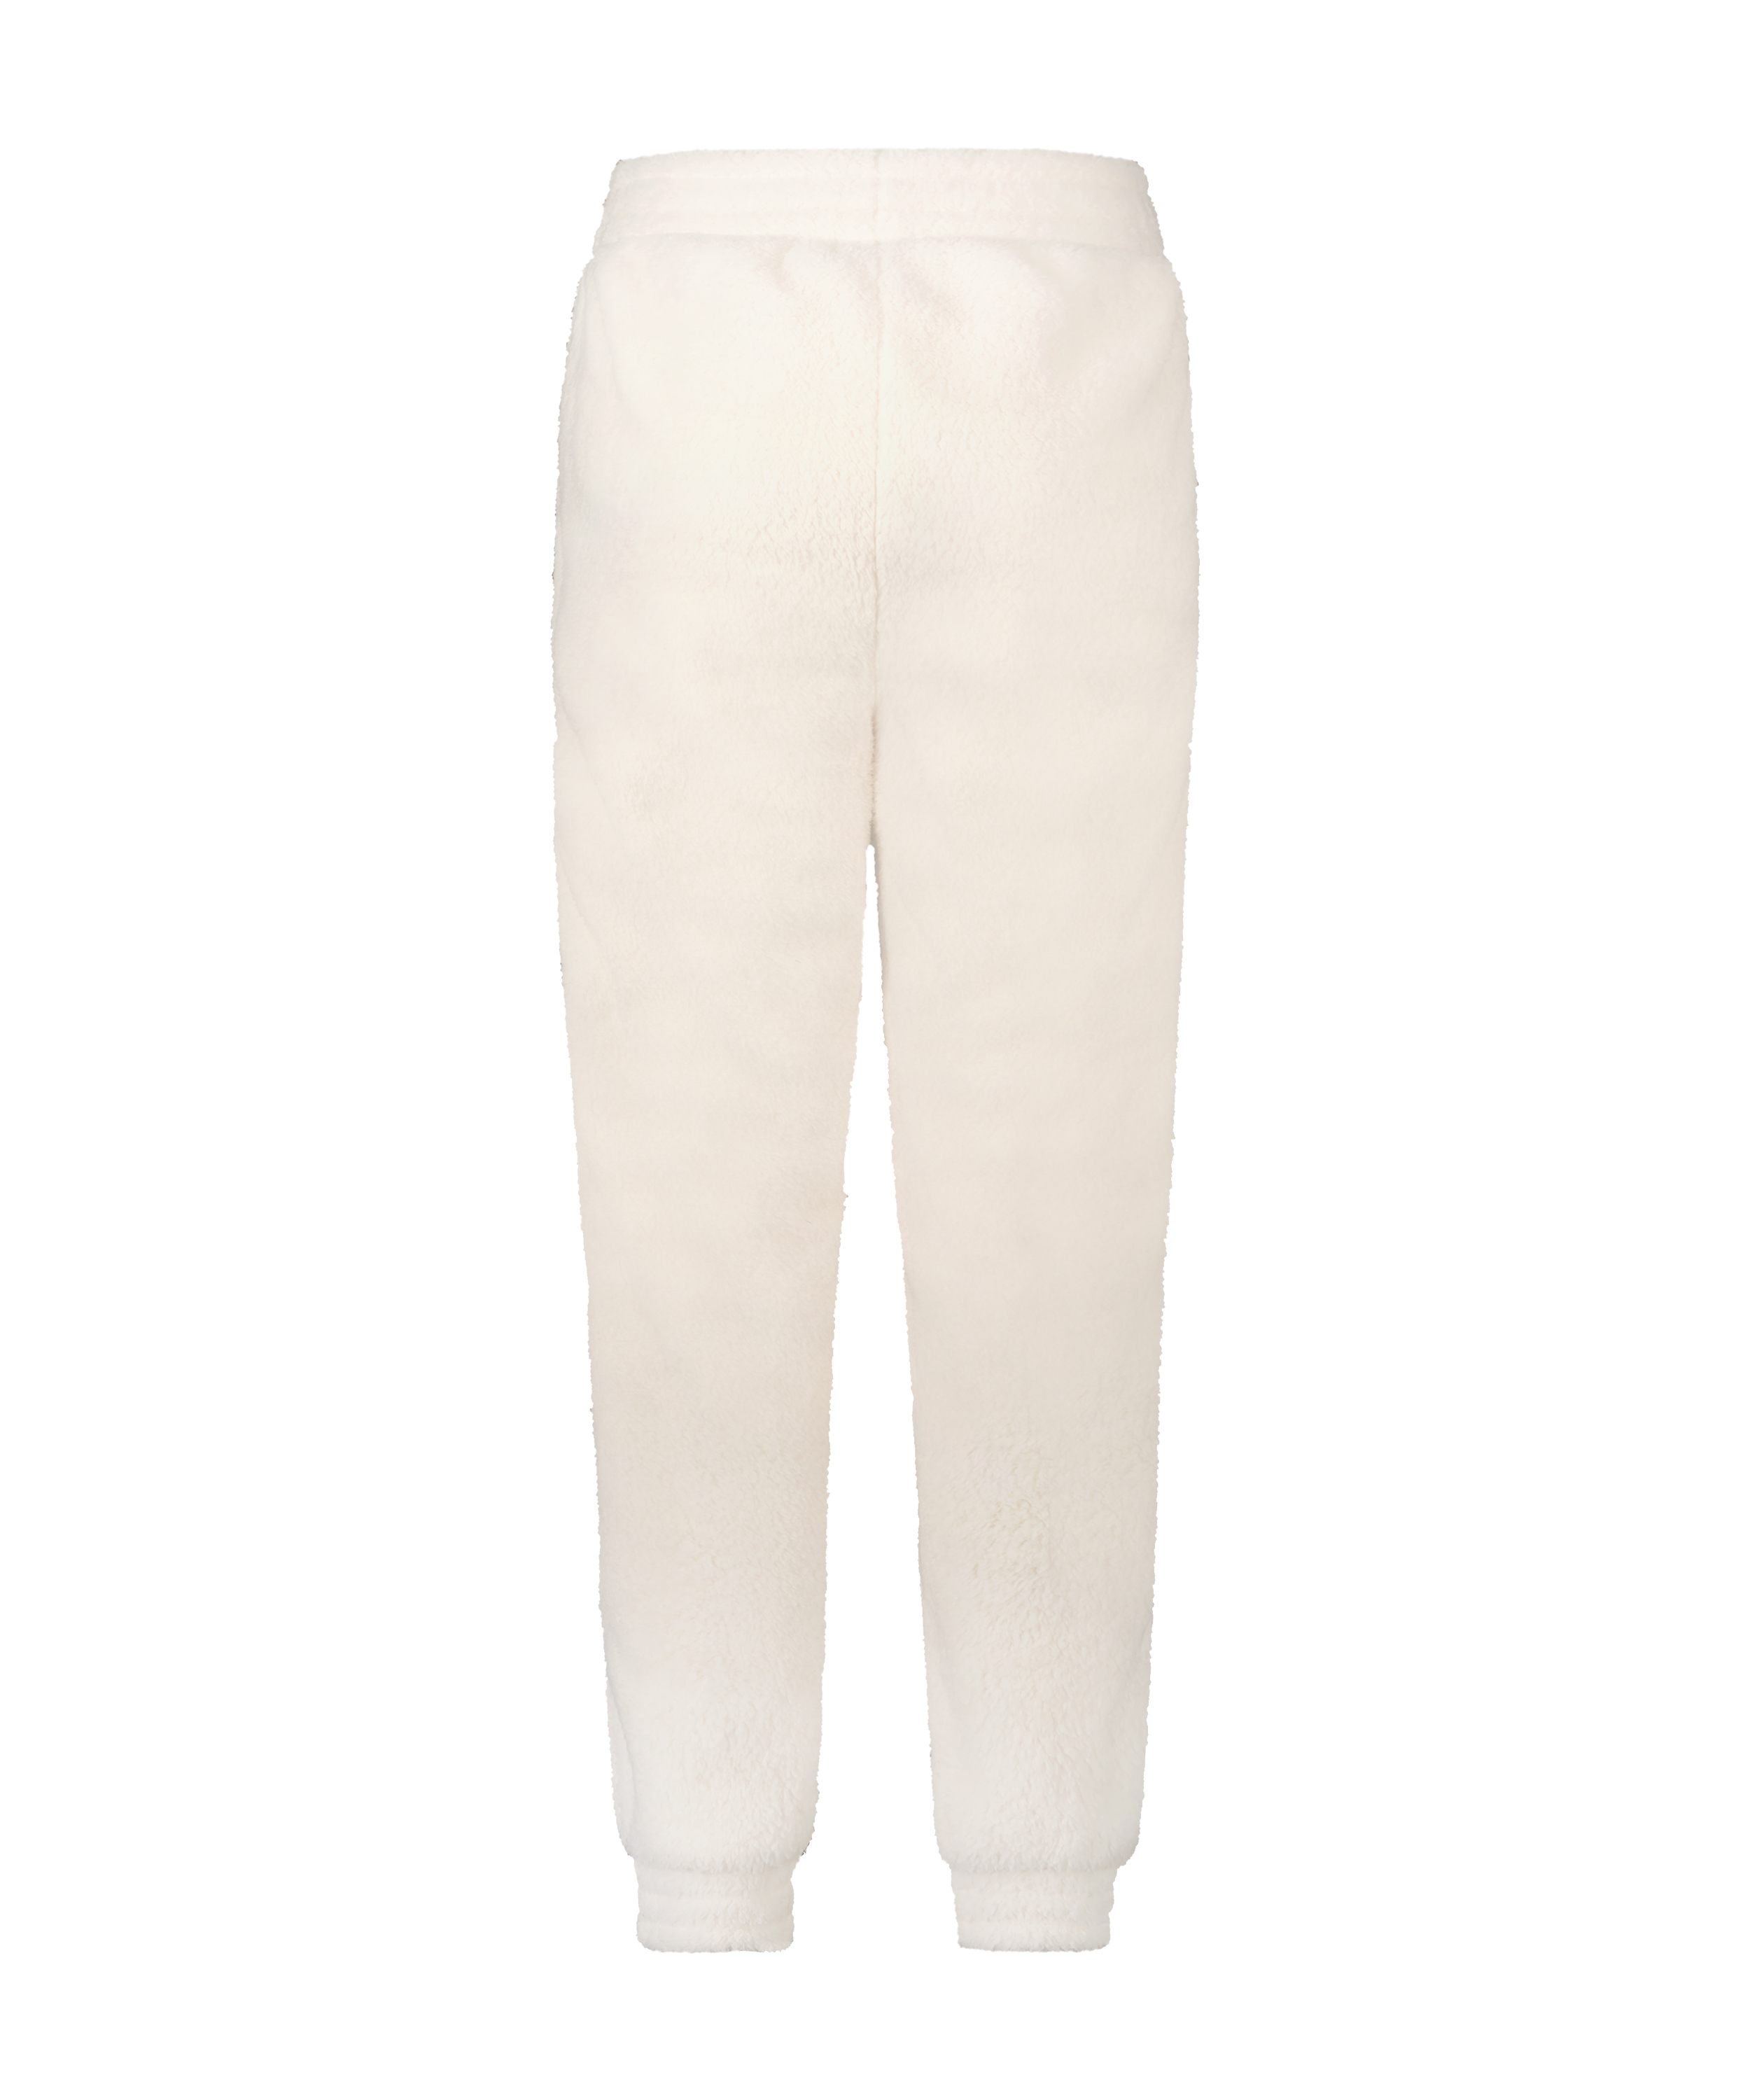 Pantalón de chándal de tejido polar tallas pequeñas, Blanco, main